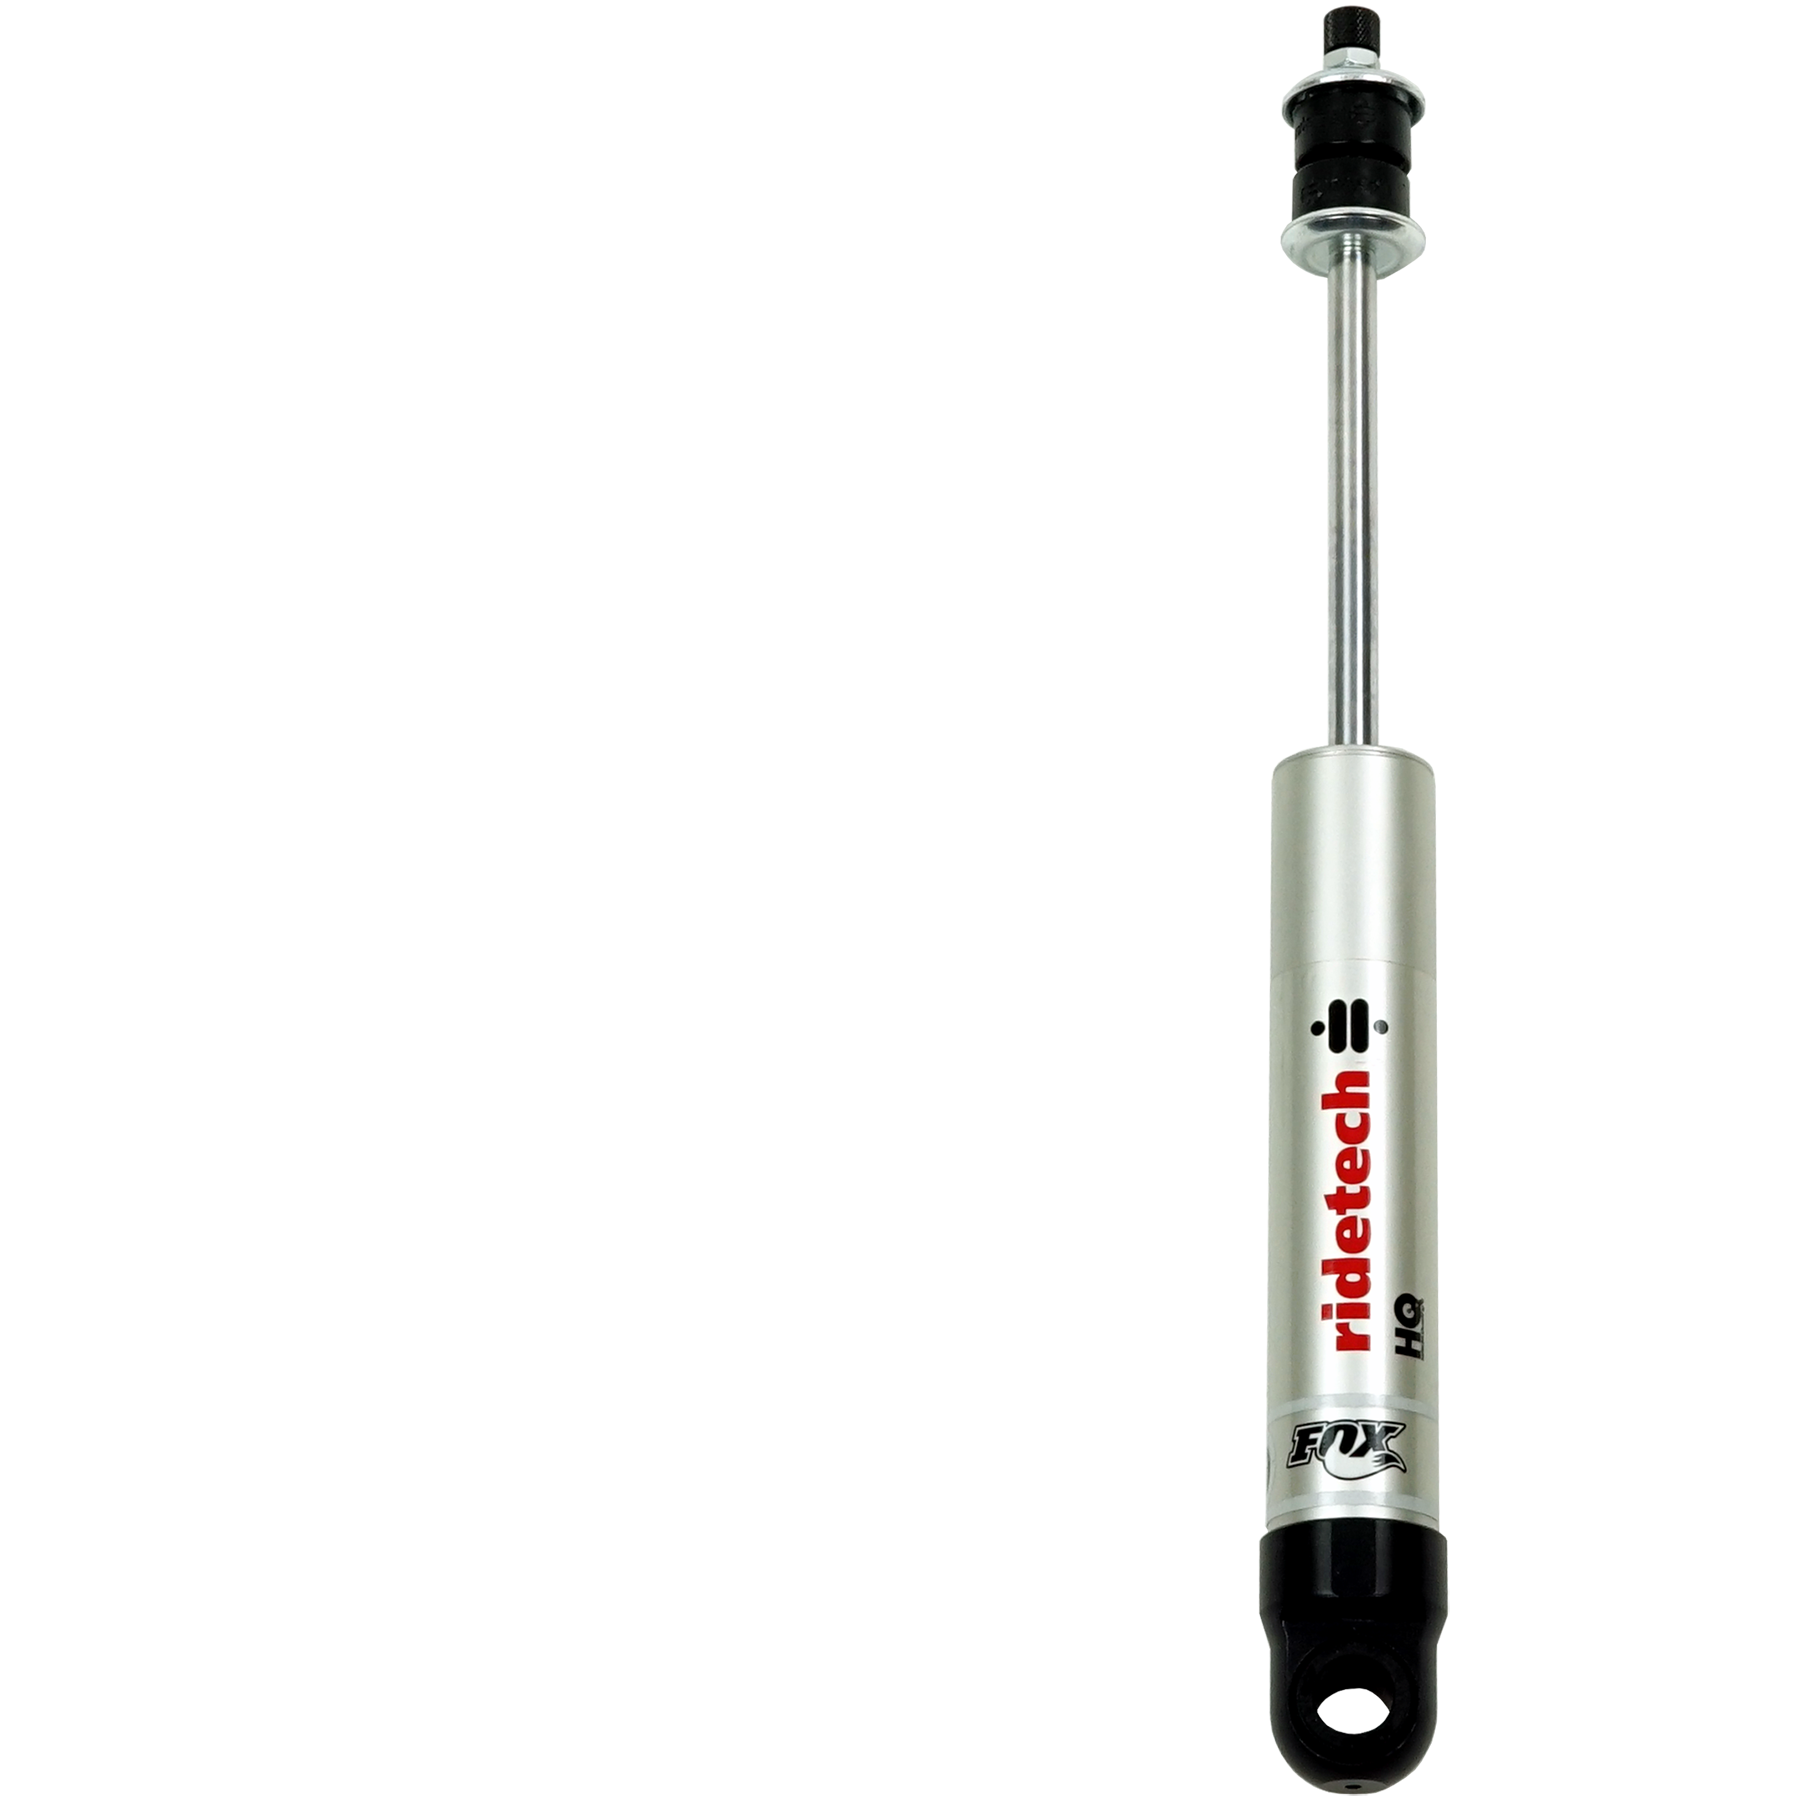 ridetech-hq-shock-eye-stud-size-label